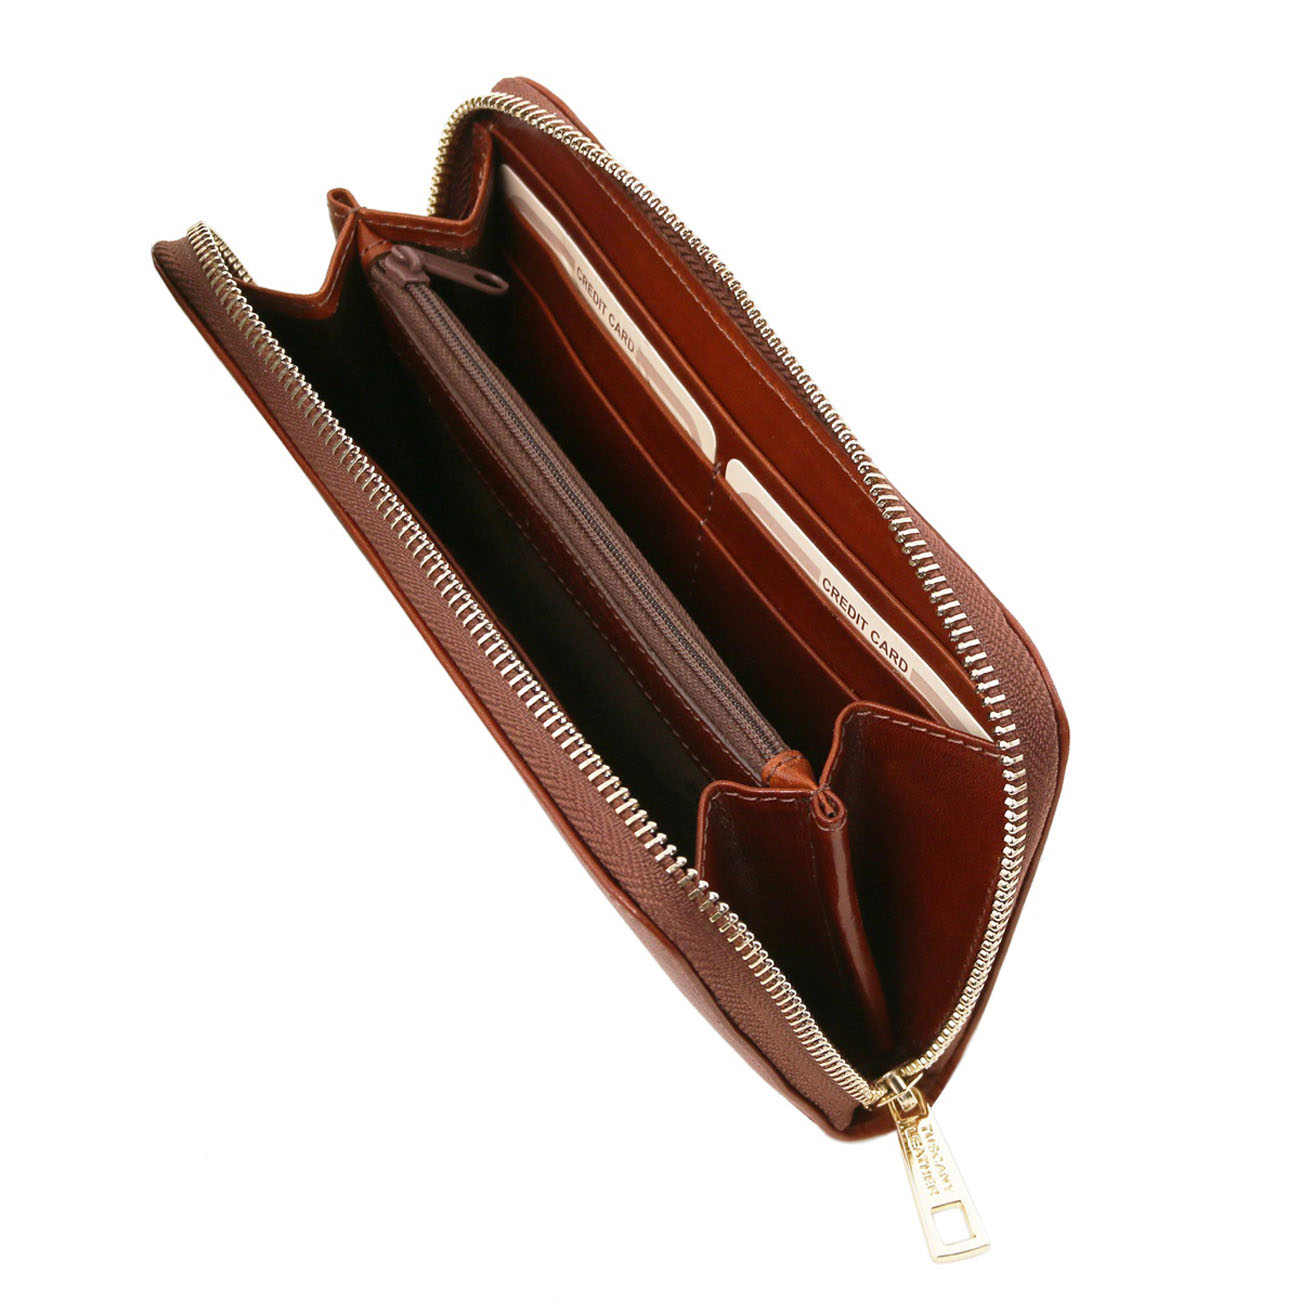 olasz bőr pénztárca női tárca webáruház webshop Tuscany Leather